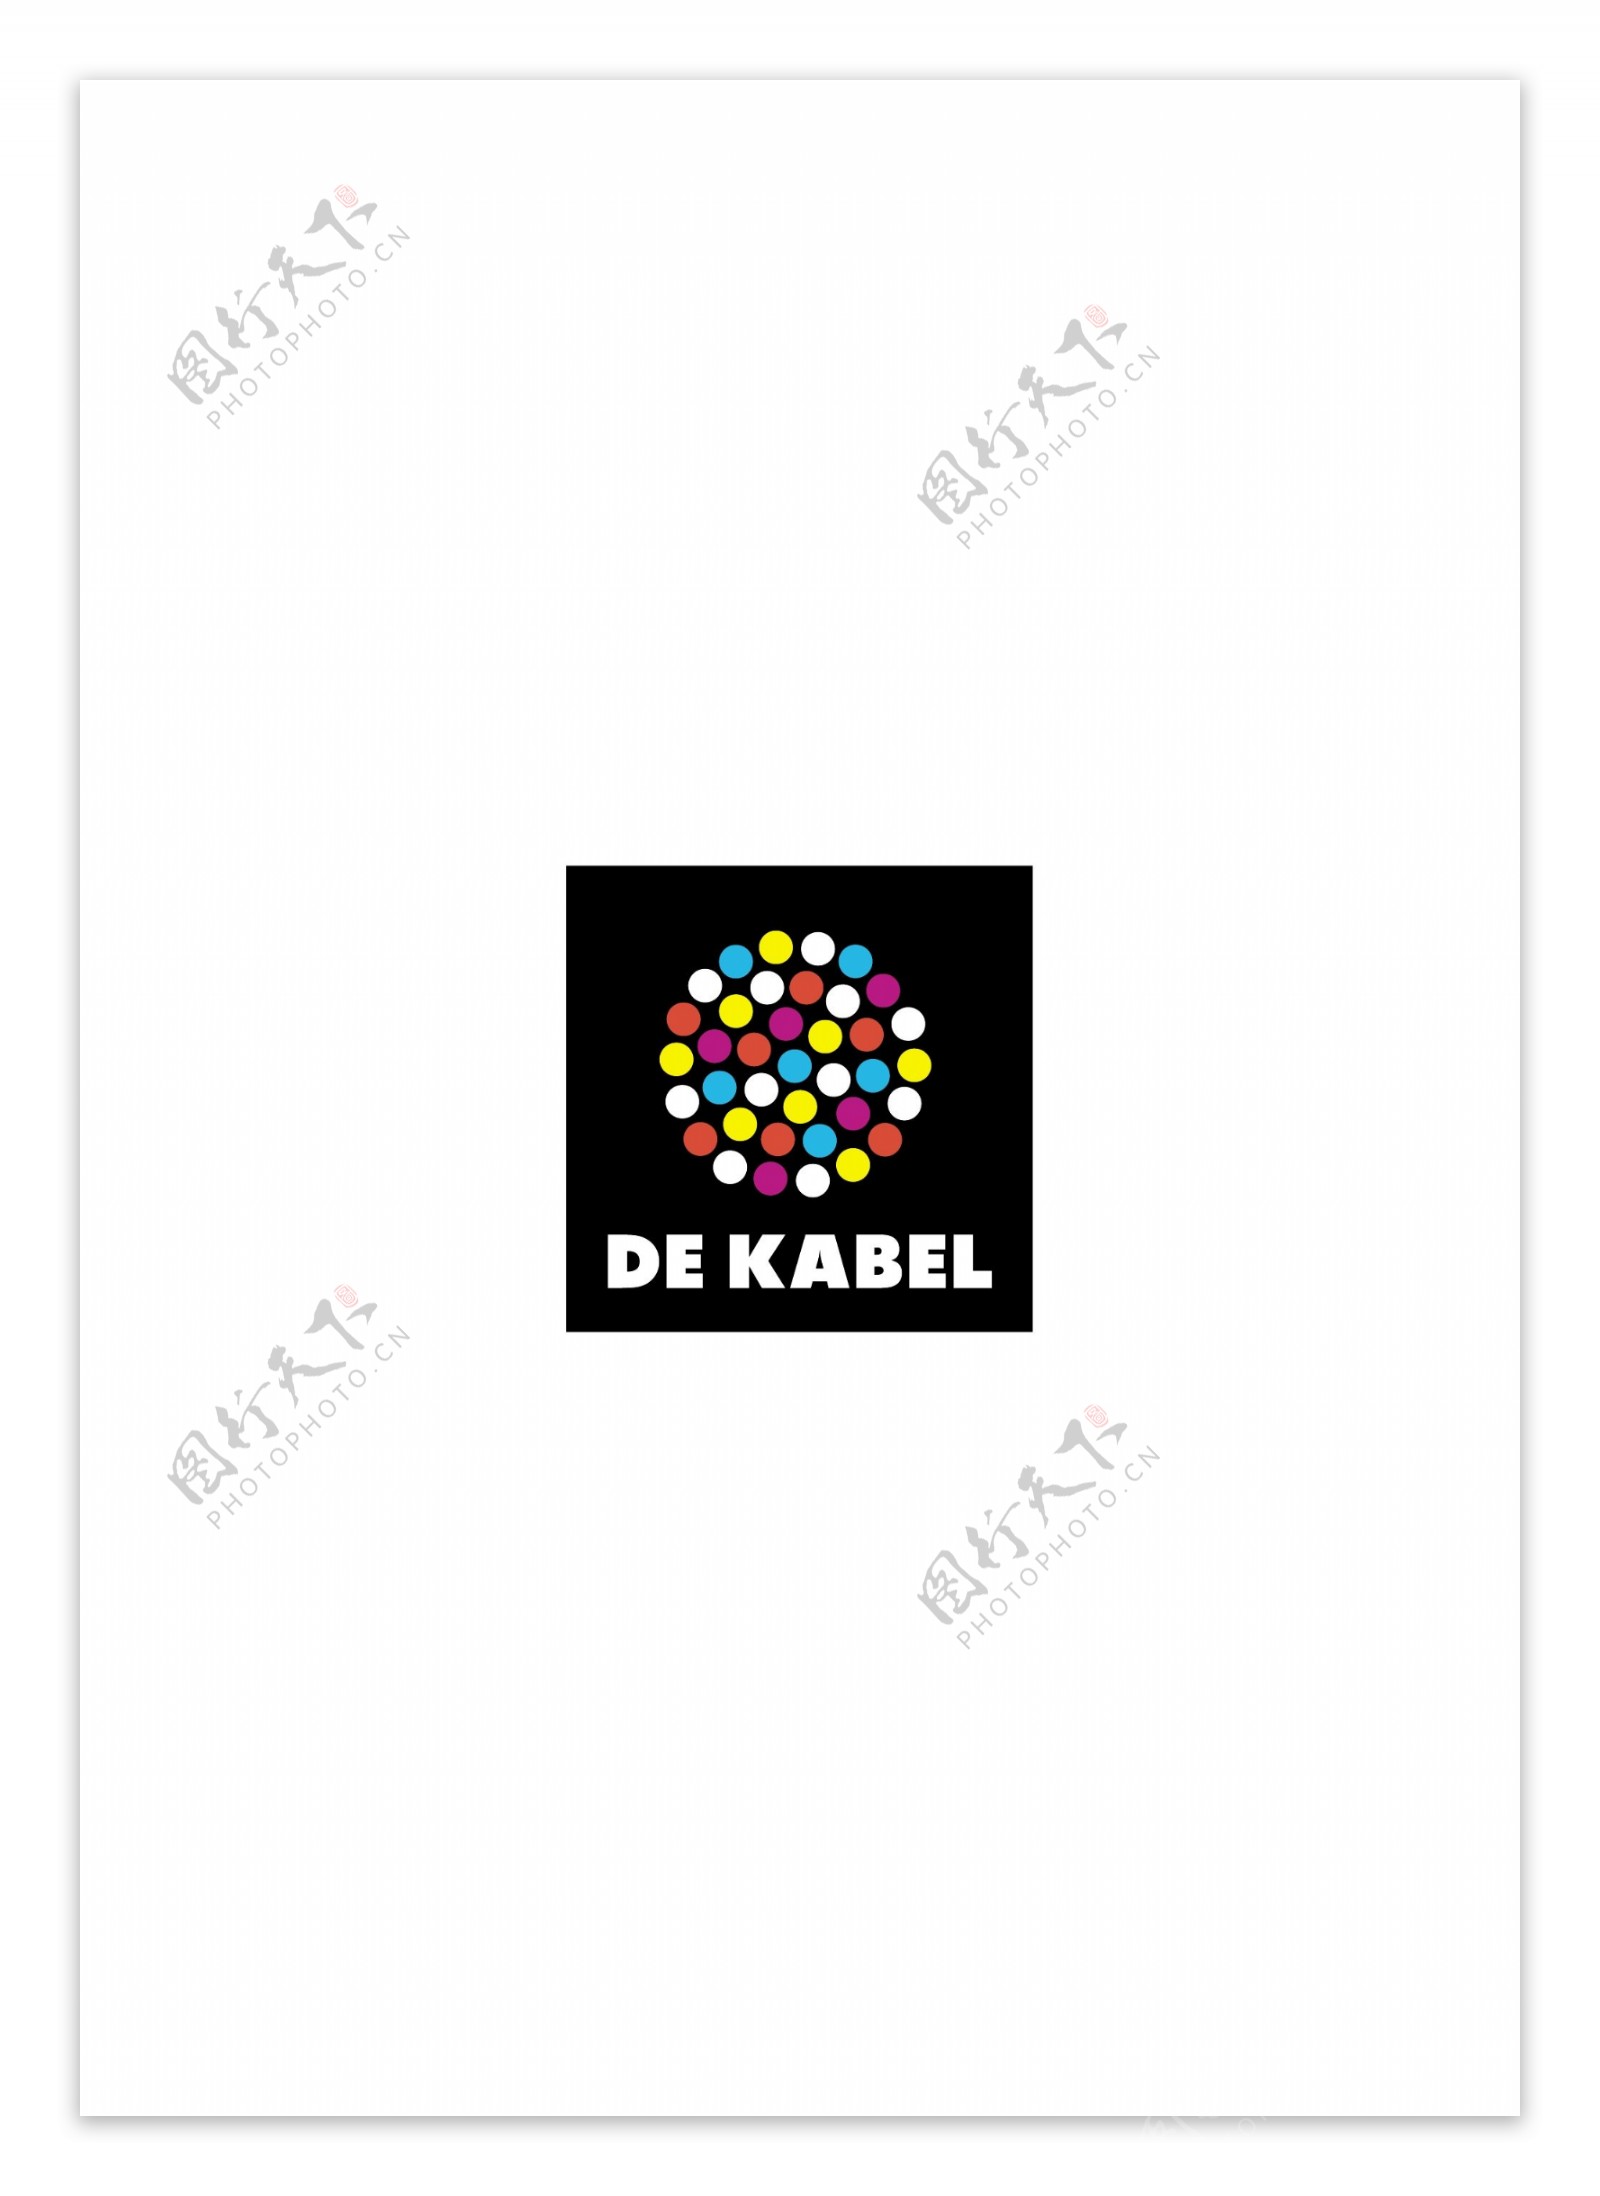 DeKabellogo设计欣赏DeKabel电信公司标志下载标志设计欣赏